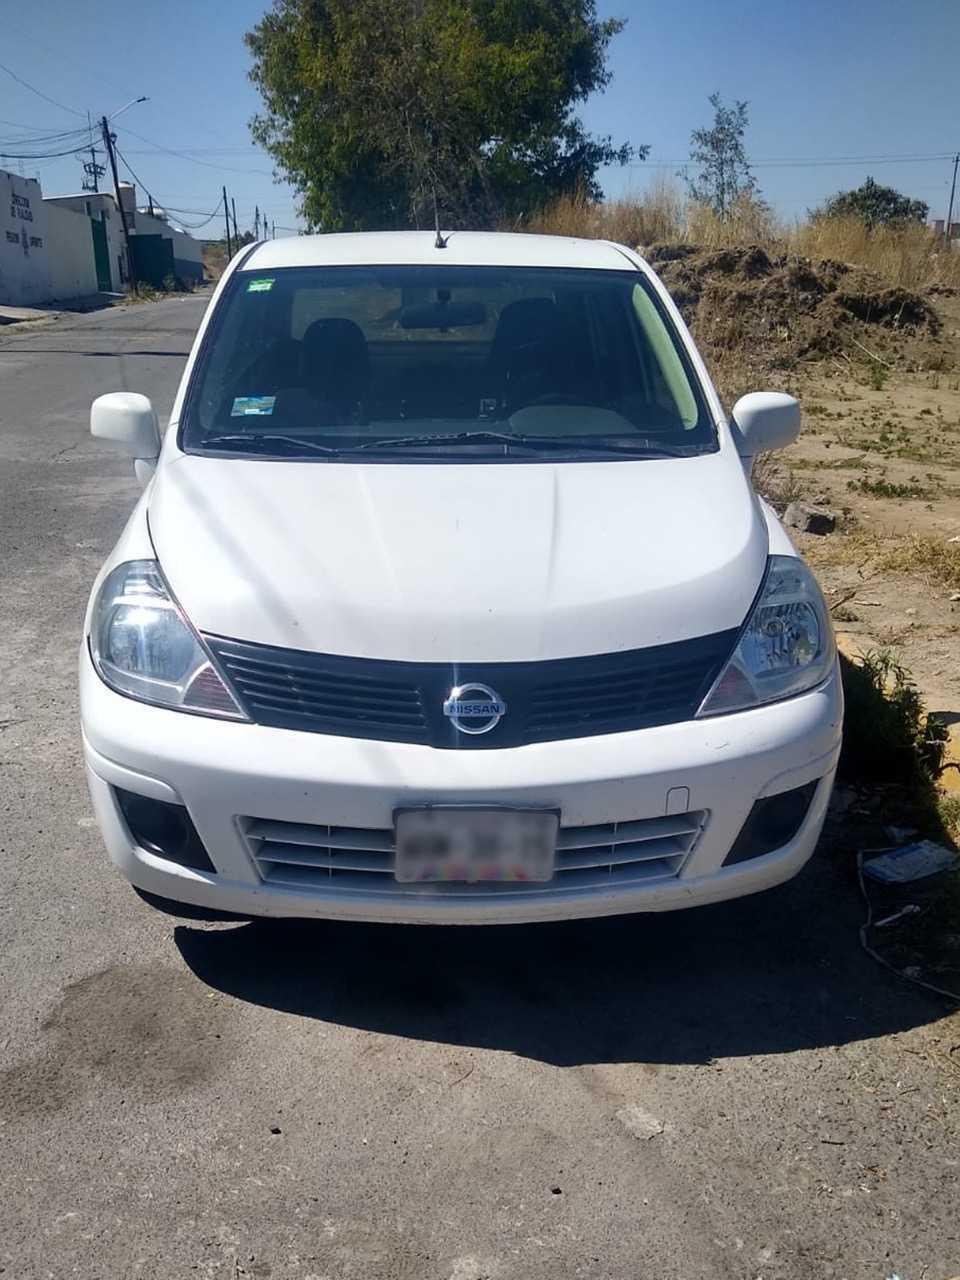 Recupera policía municipal de Huamantla vehículo robado